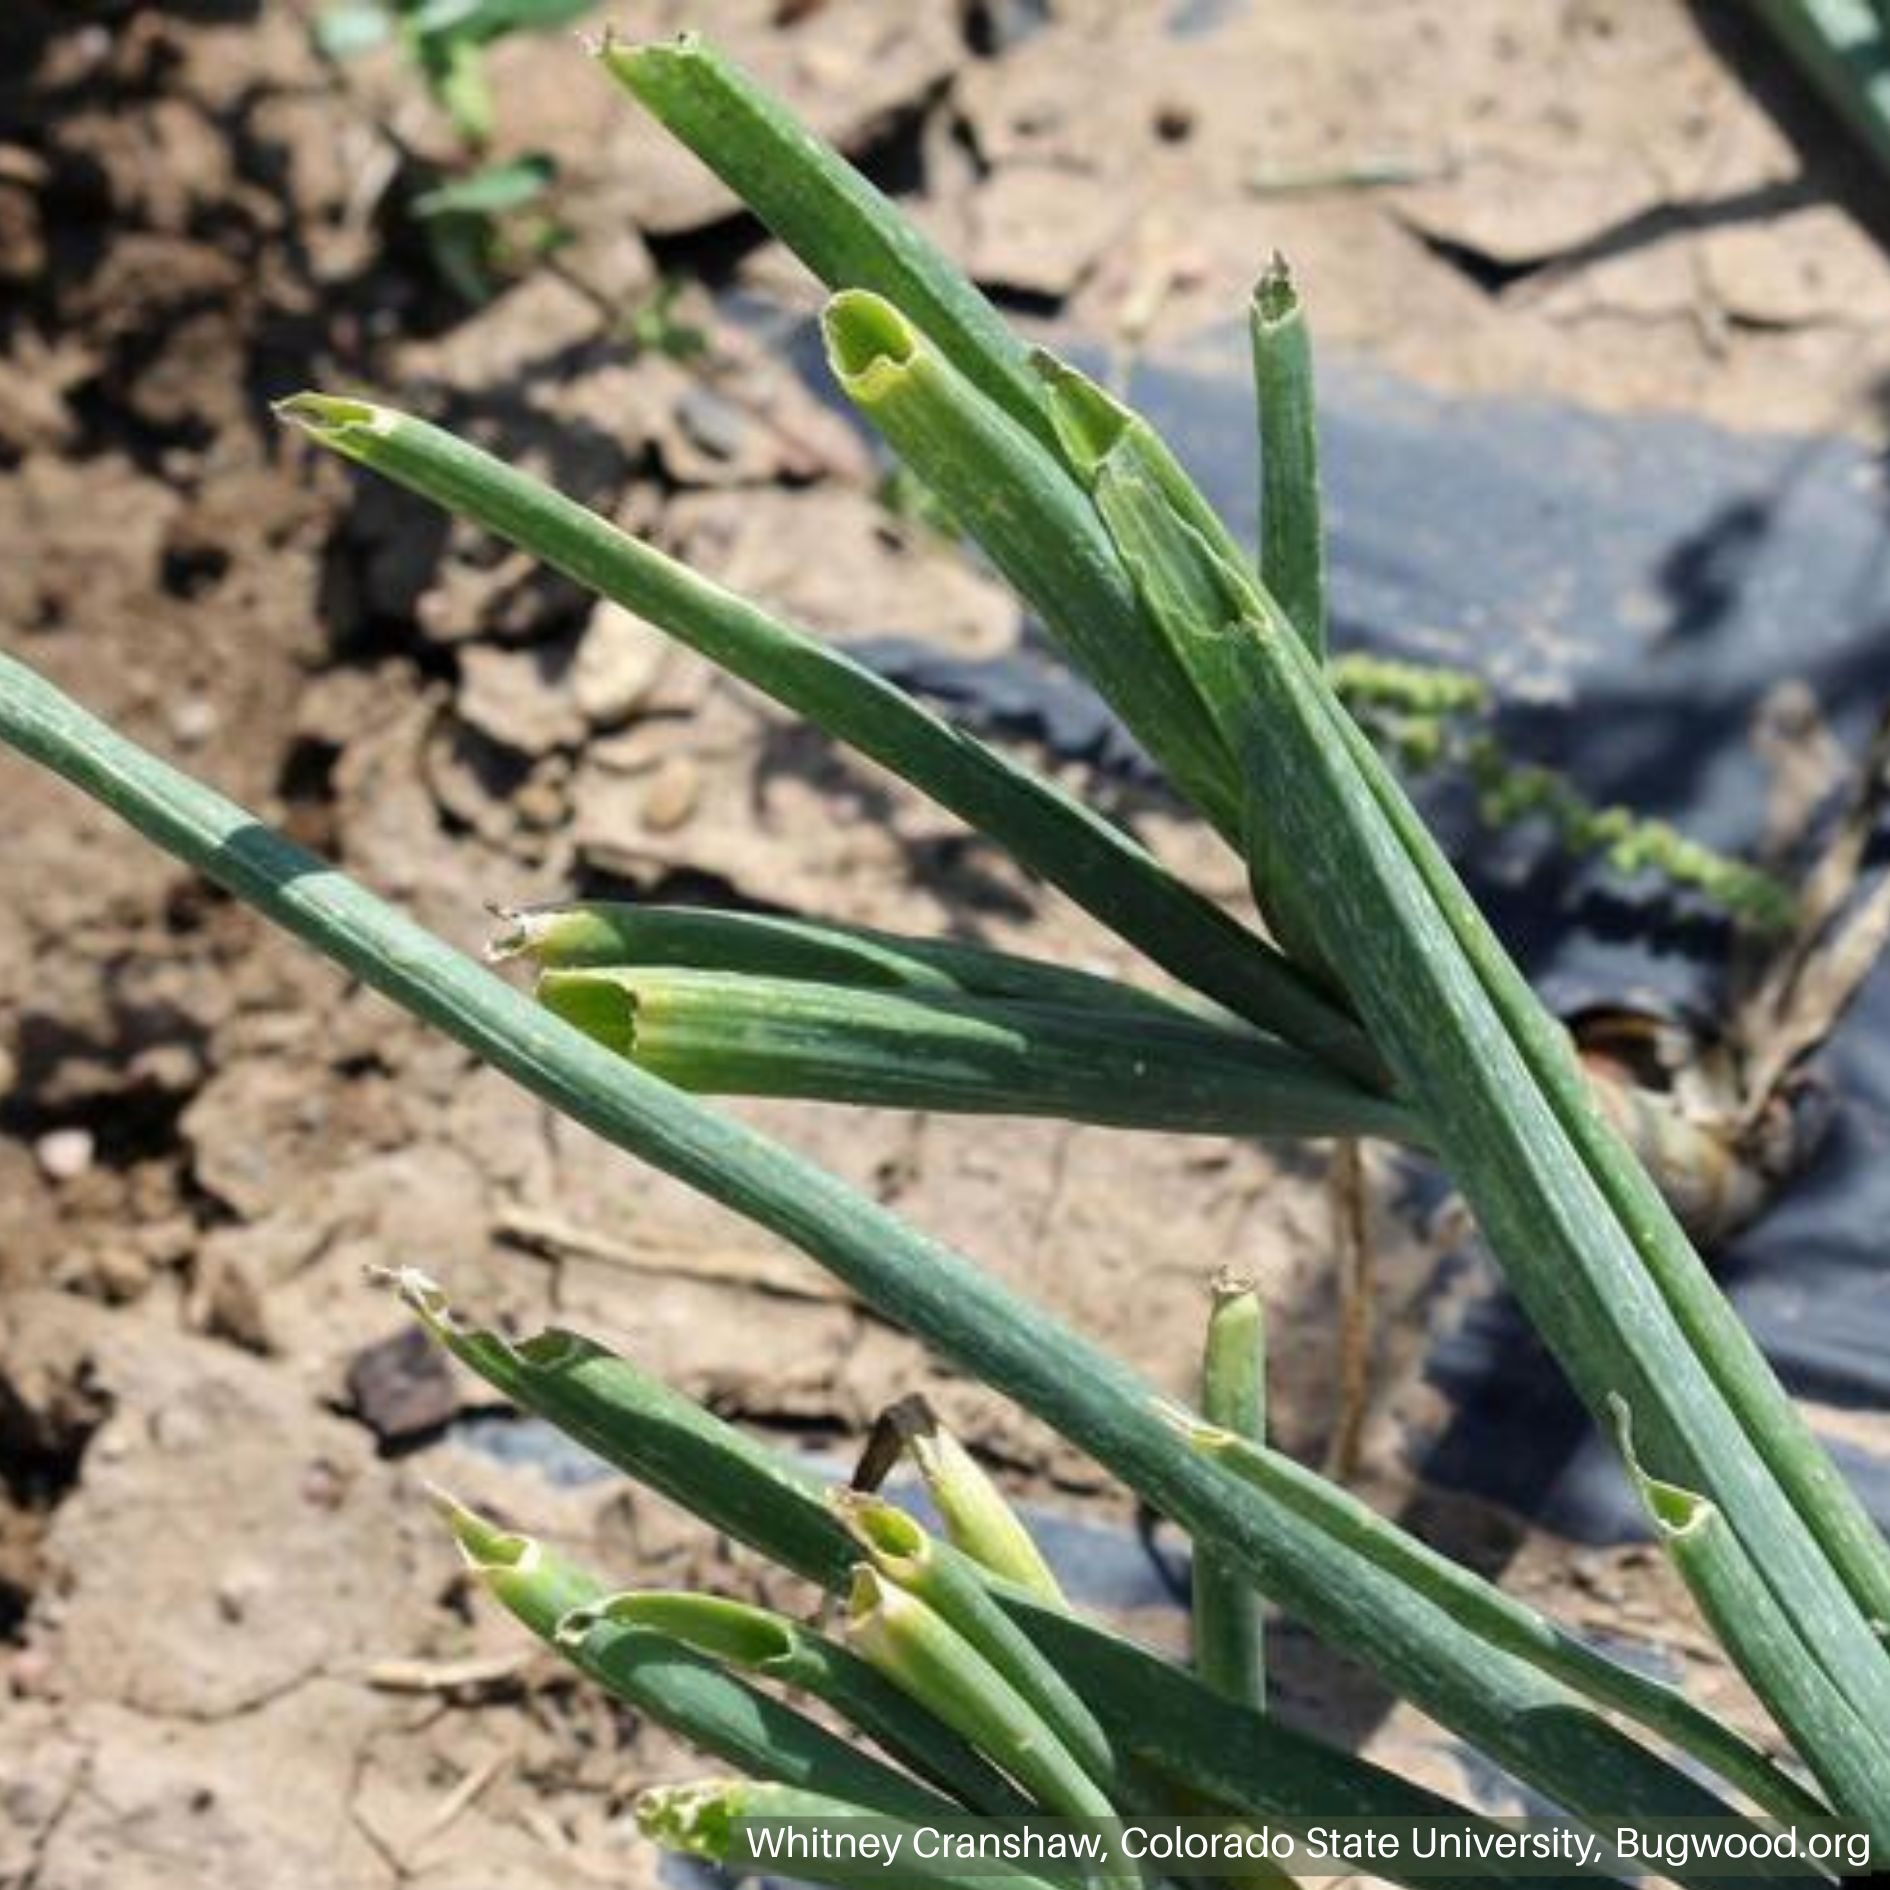 Grasshopper Feeding Damage on Onions